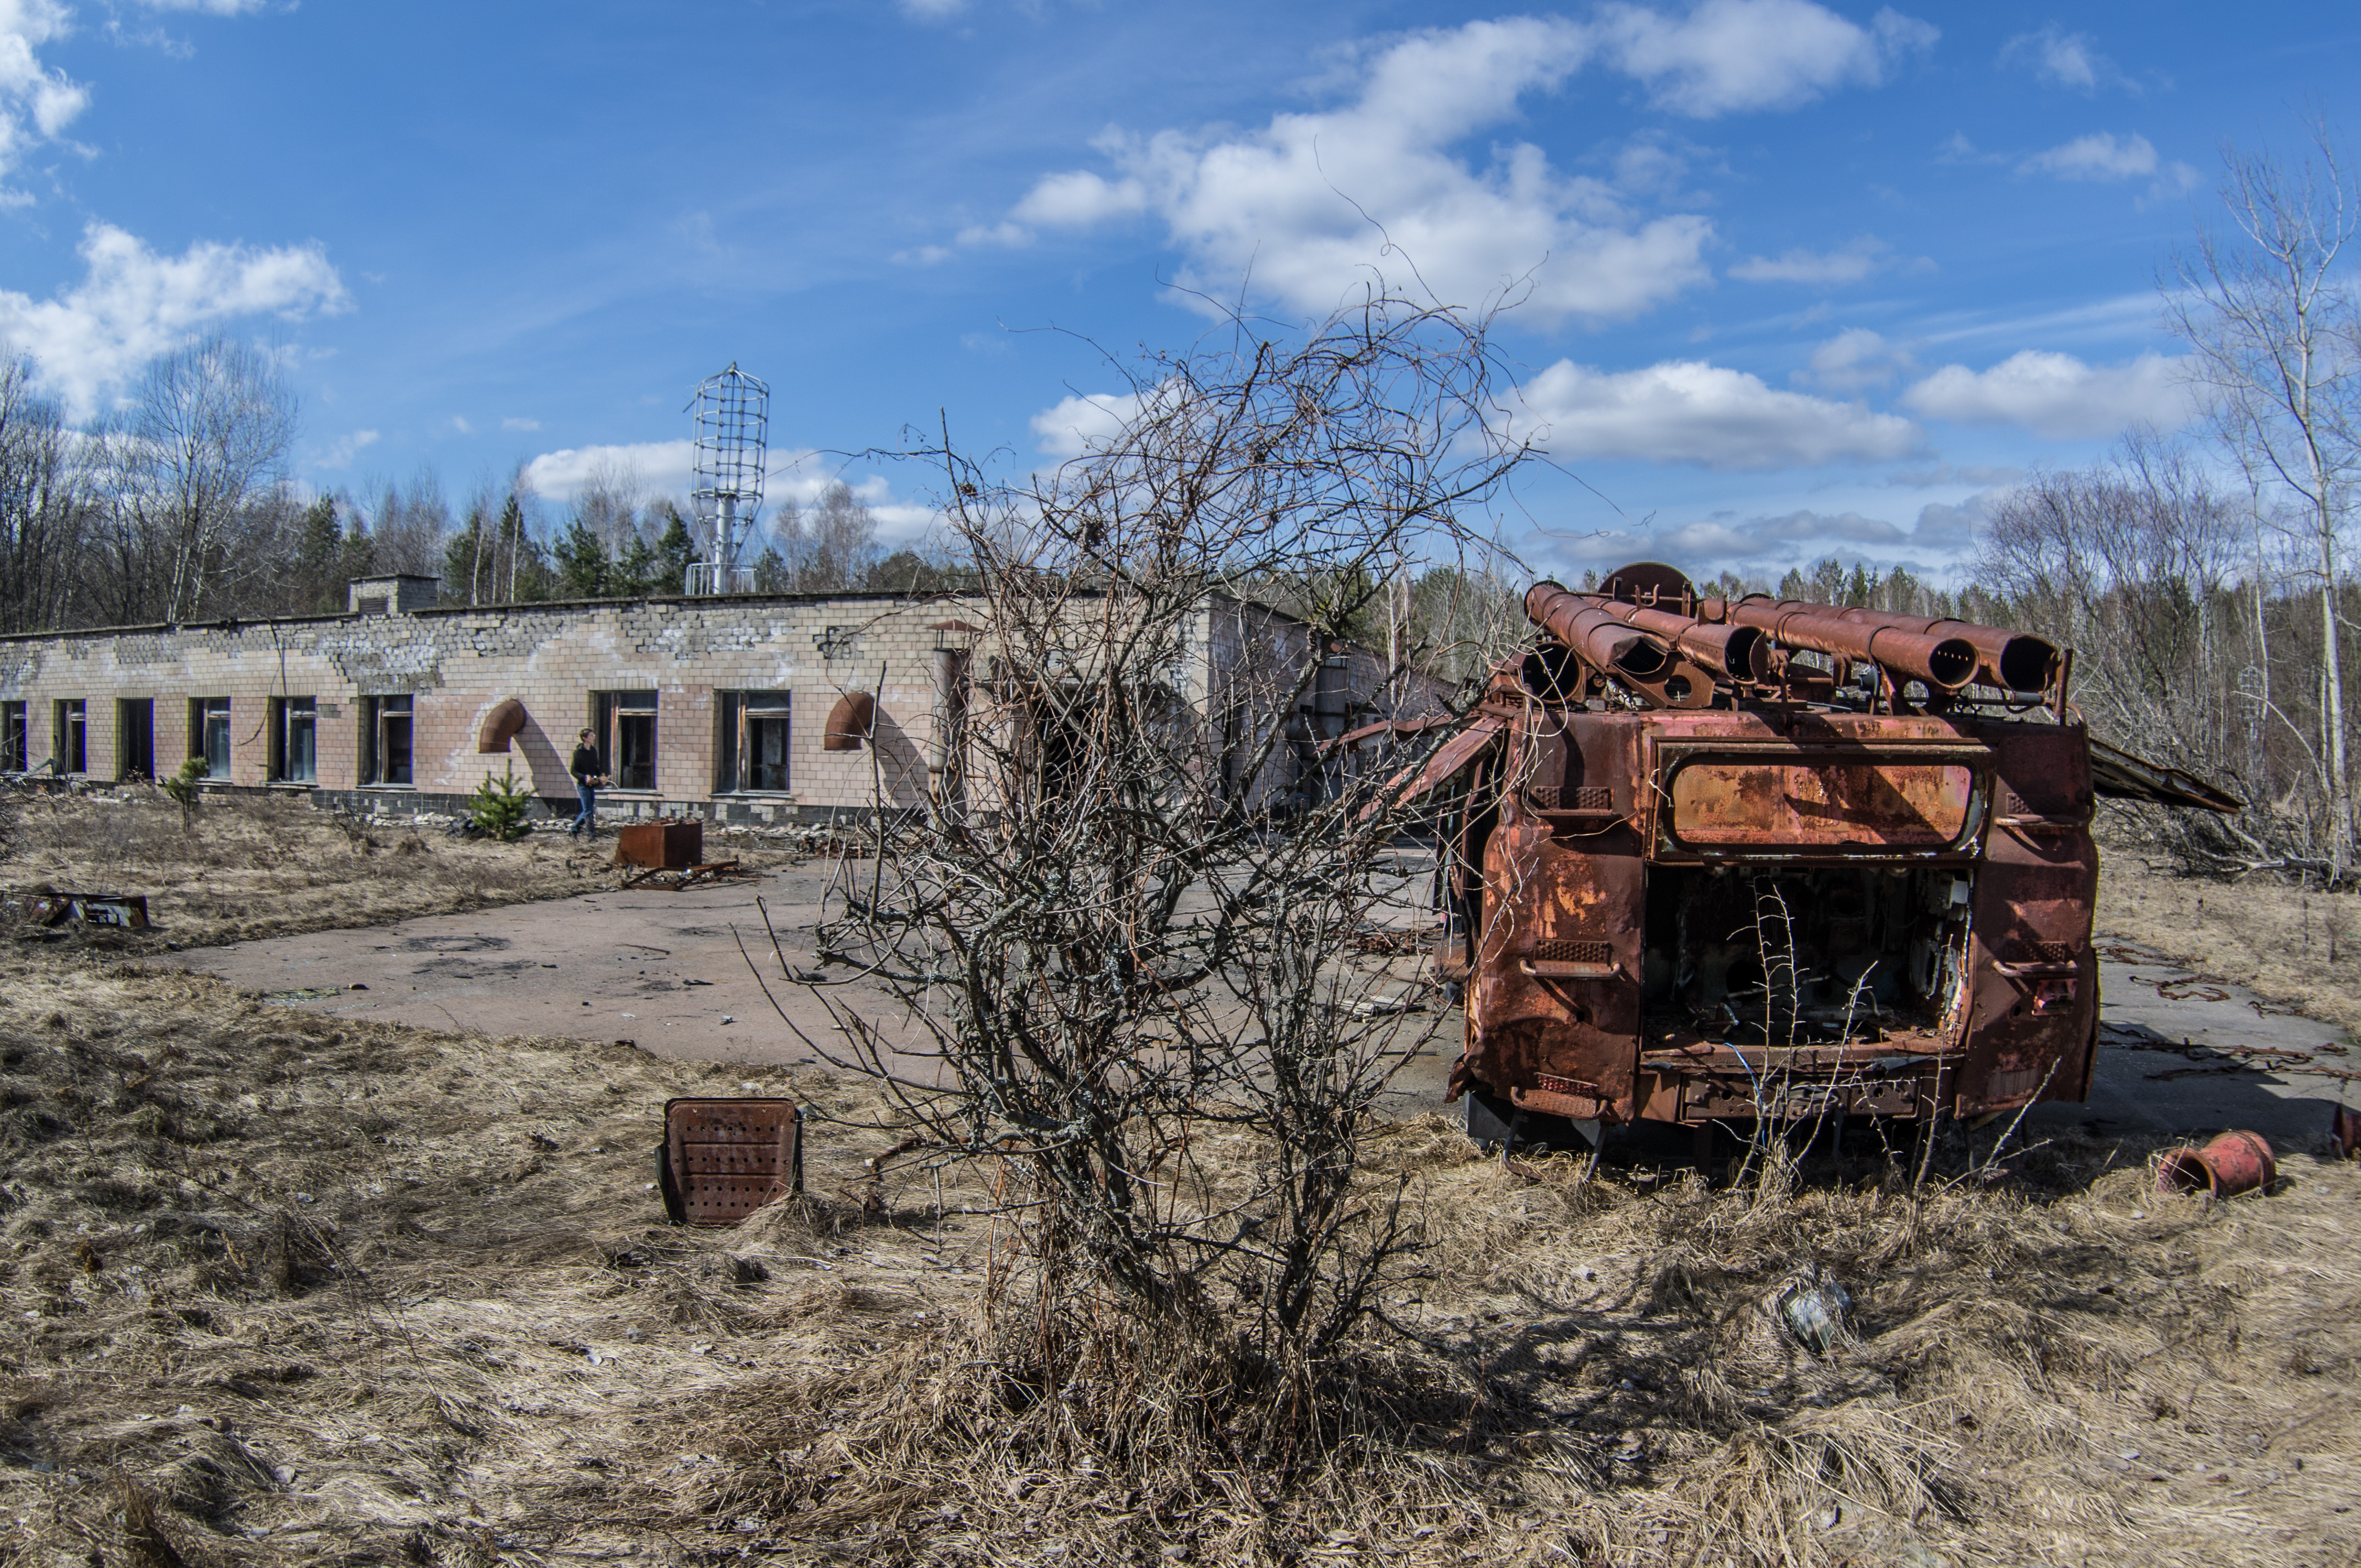 Станция зондирования ионосферы ''Круг'' – составляющая объекта Чернобыль-2, куда не возят групповые экскурсии